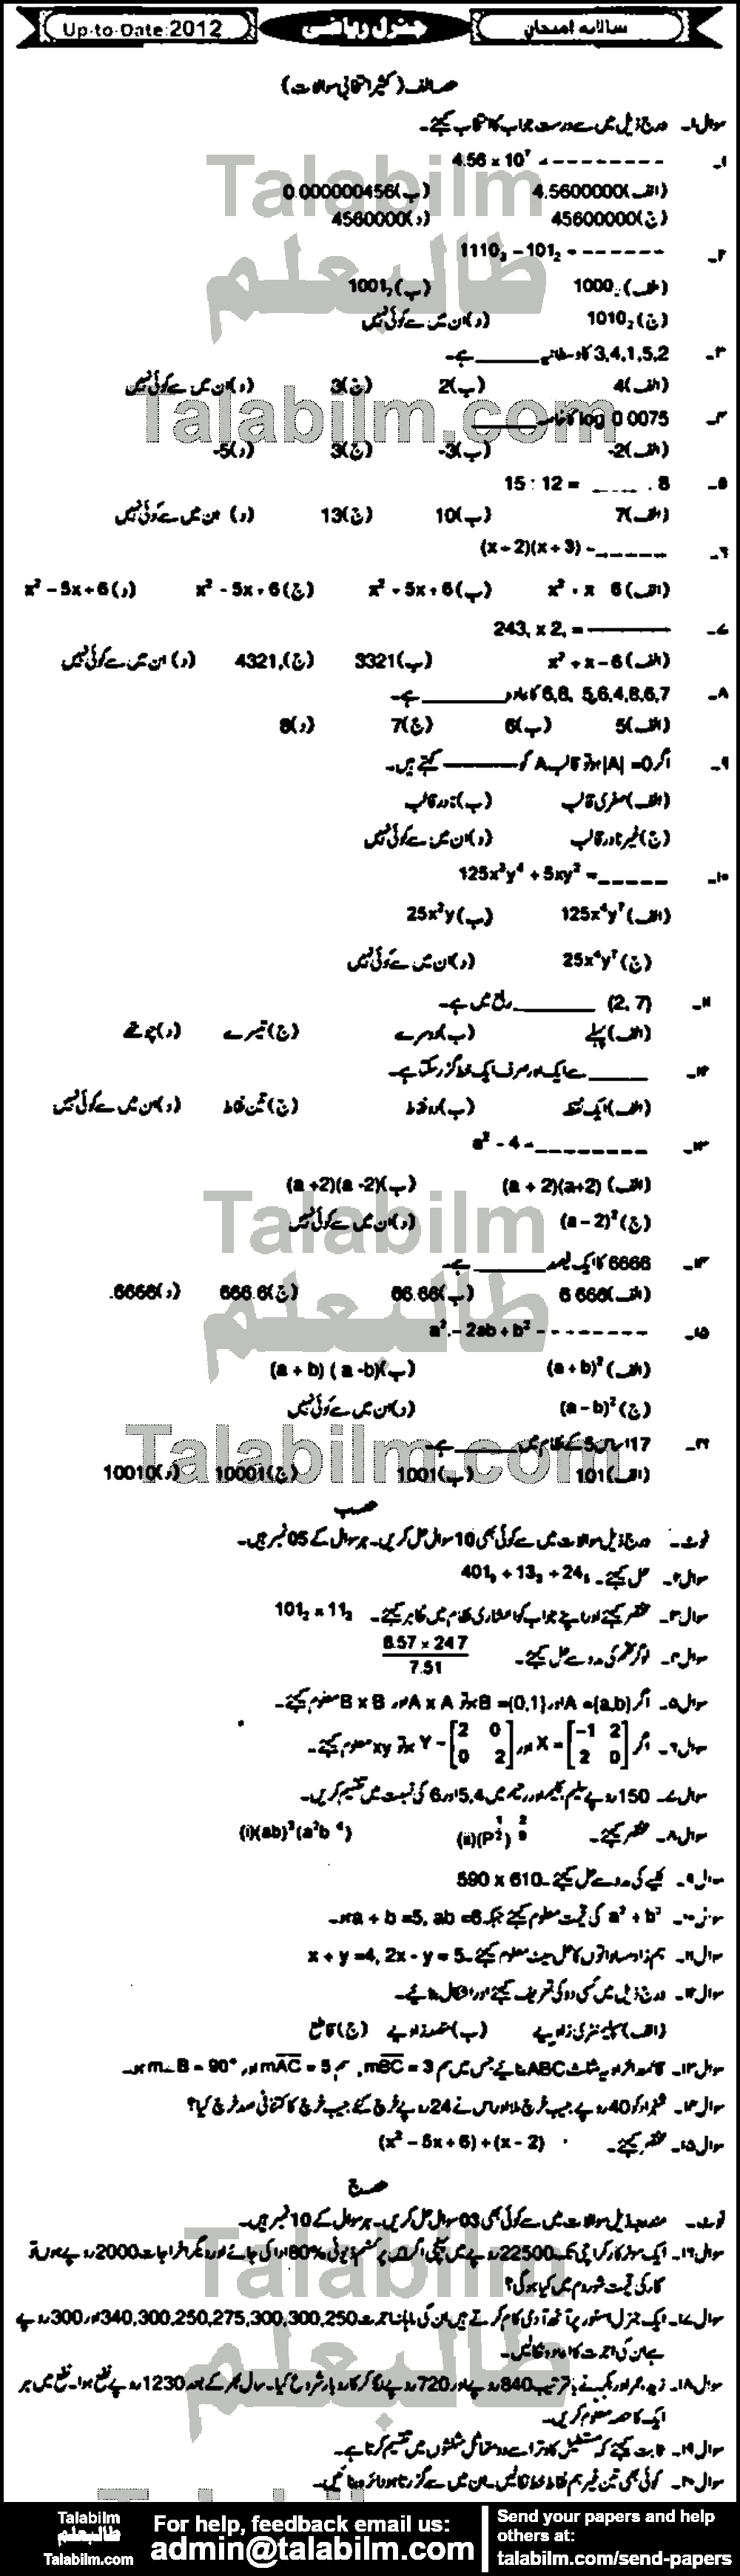 Math 0 past paper for Urdu Medium 2012 Group-I